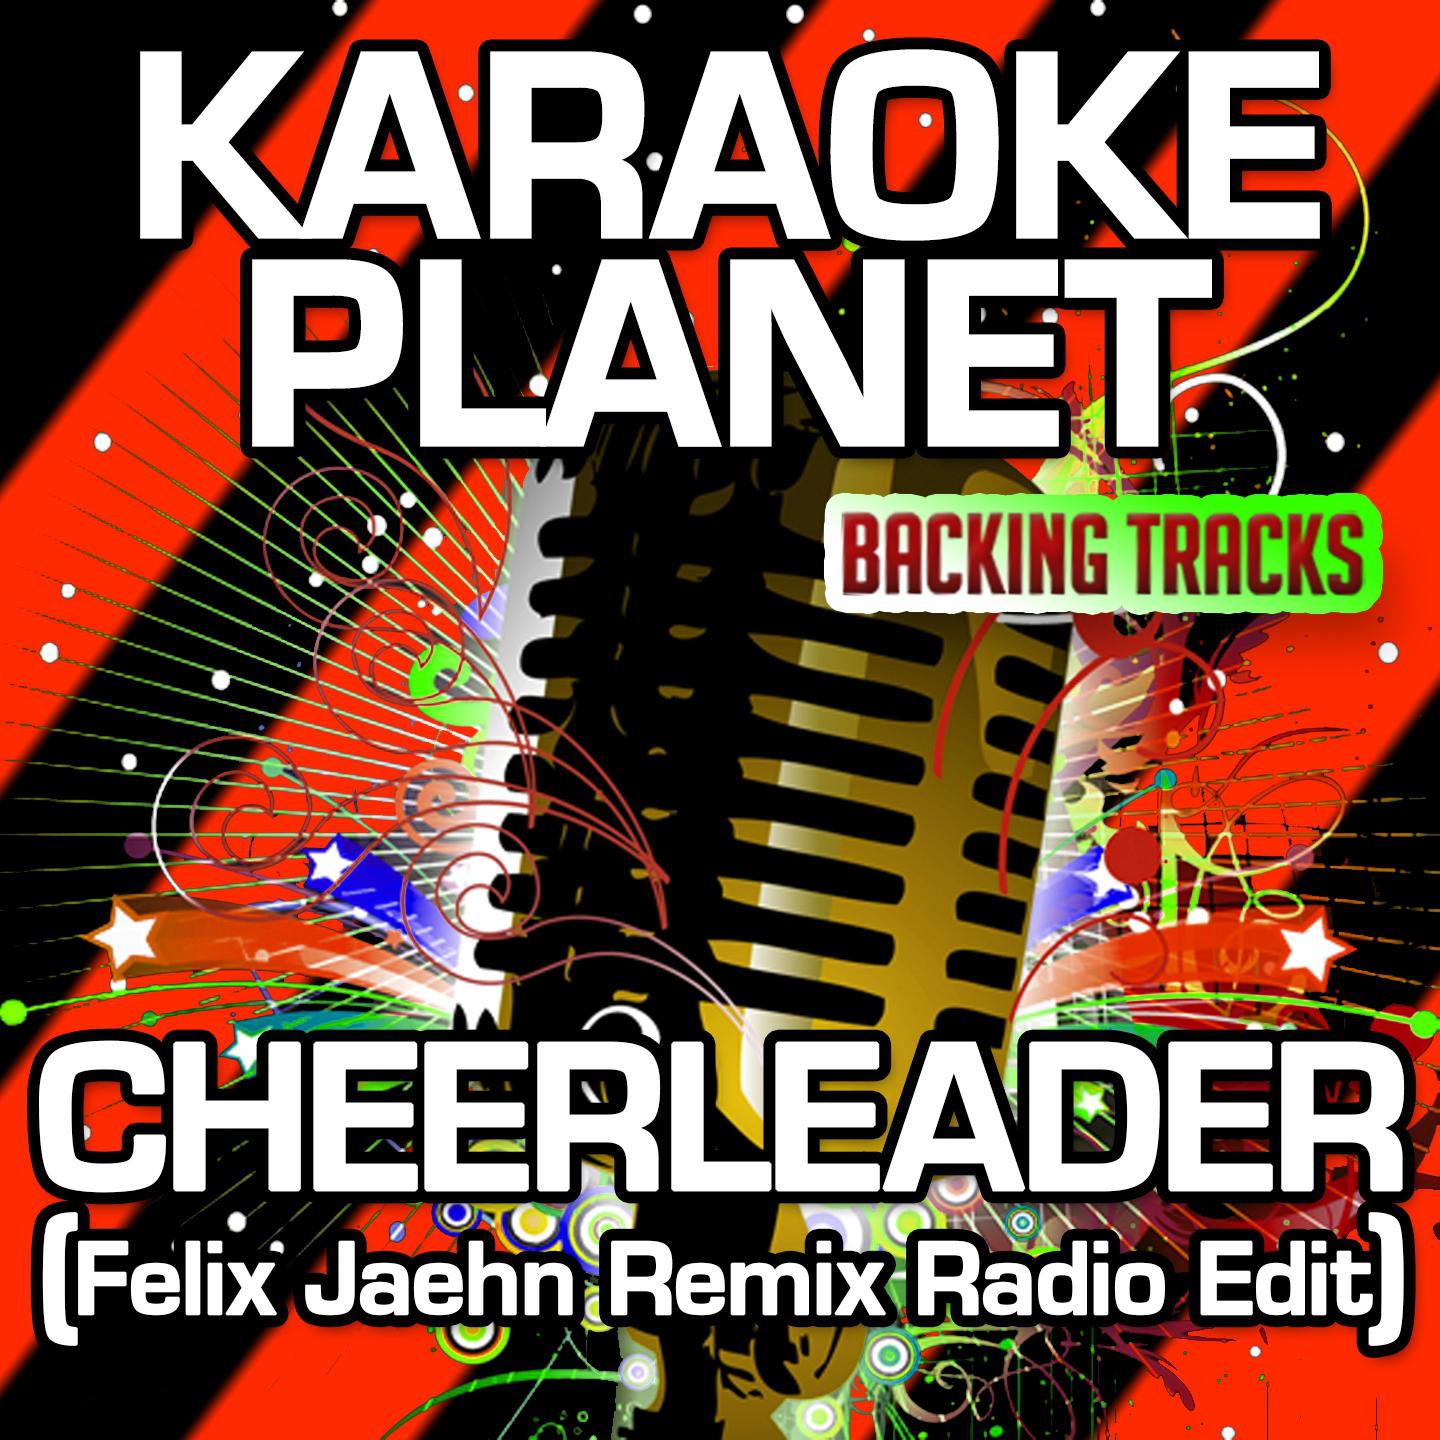 Cheerleader (Felix Jaehn Remix Radio Edit) [Karaoke Version] (Originally Performed By OMI)